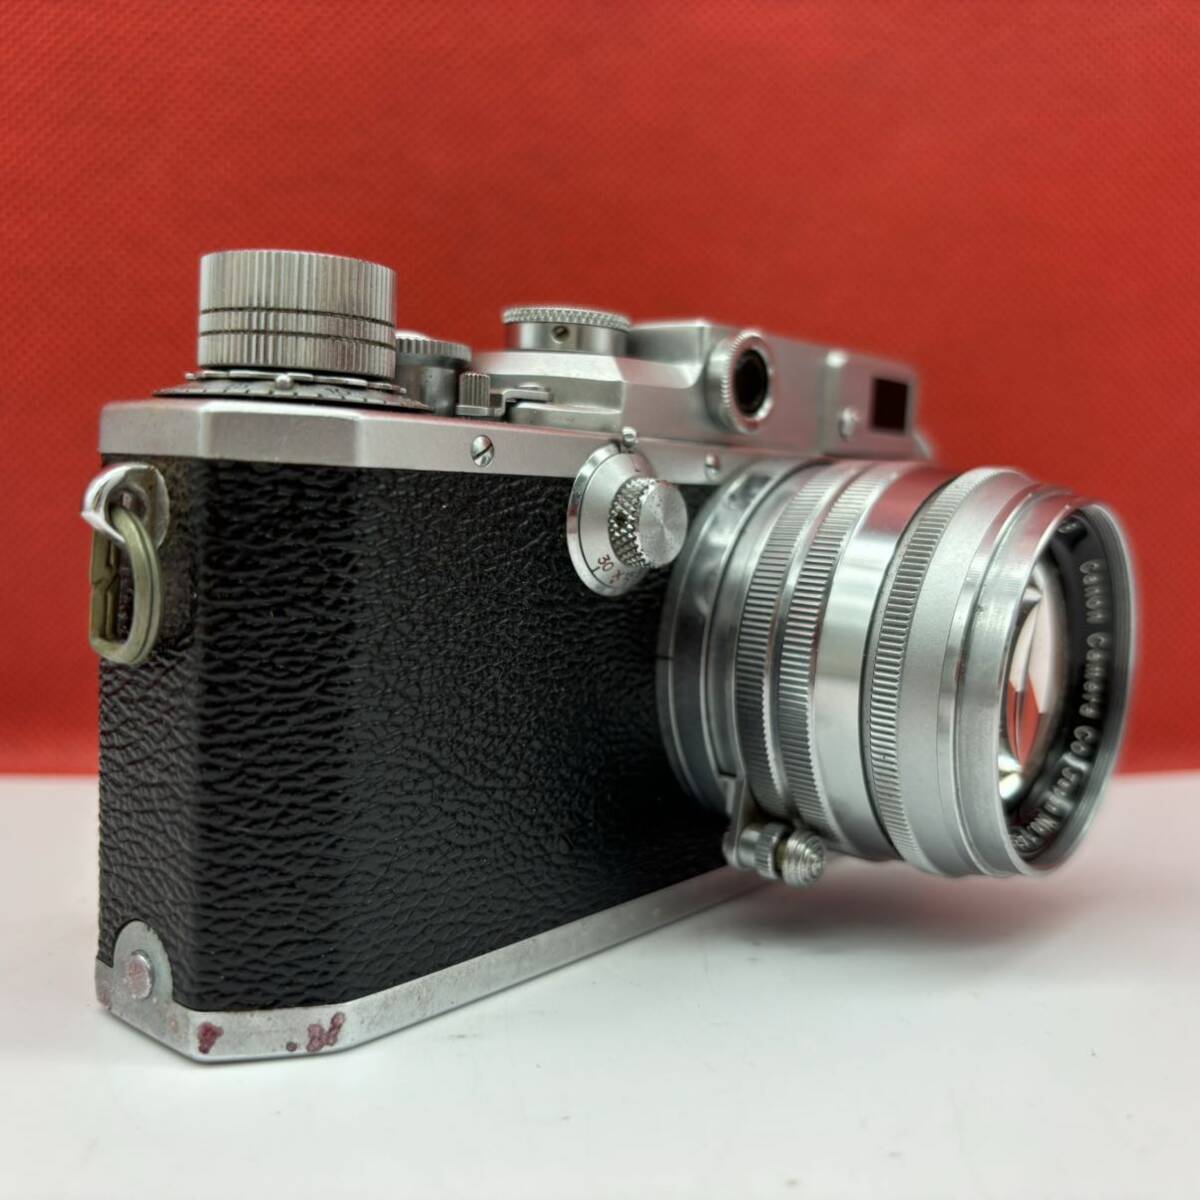 * Canon ⅣSb modified film camera range finder body 50mm F1.8 lens Junk Canon 